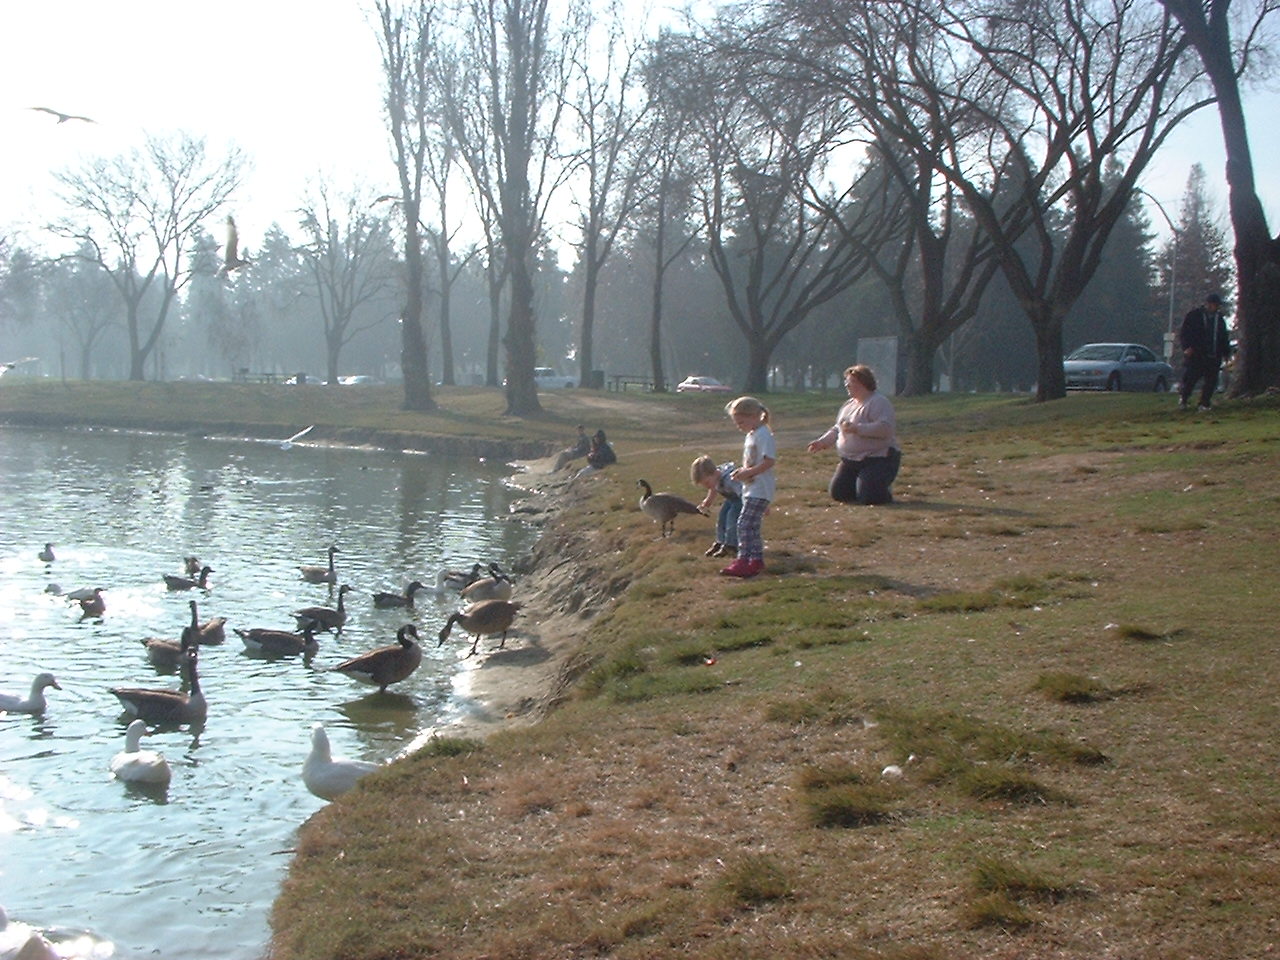 children feeding ducks in park [IMG]